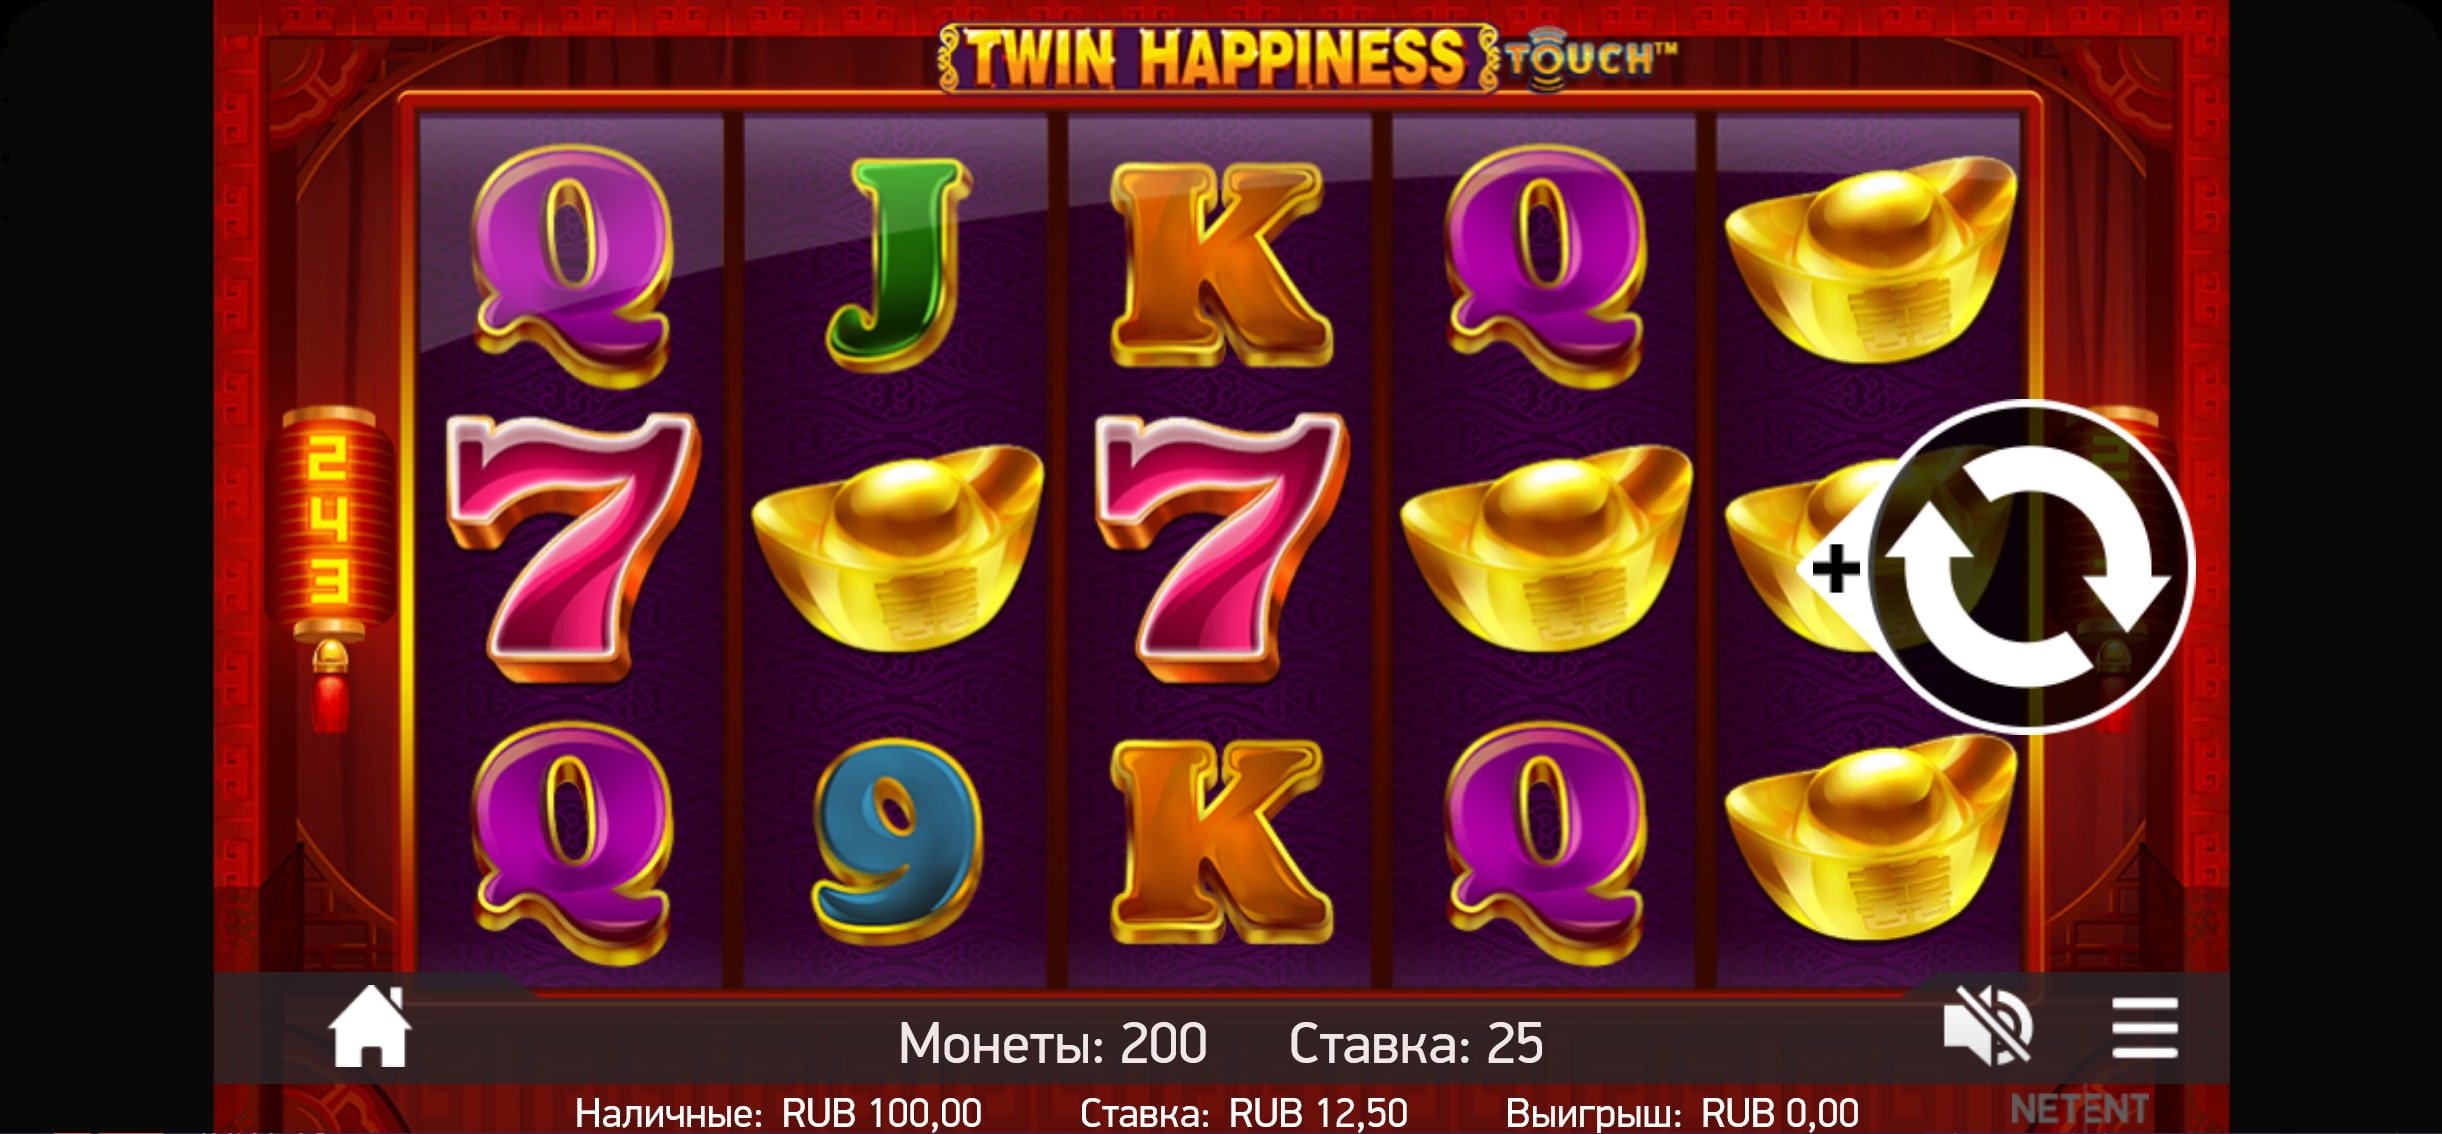 Kraken Casino Mobile Slot Games Review